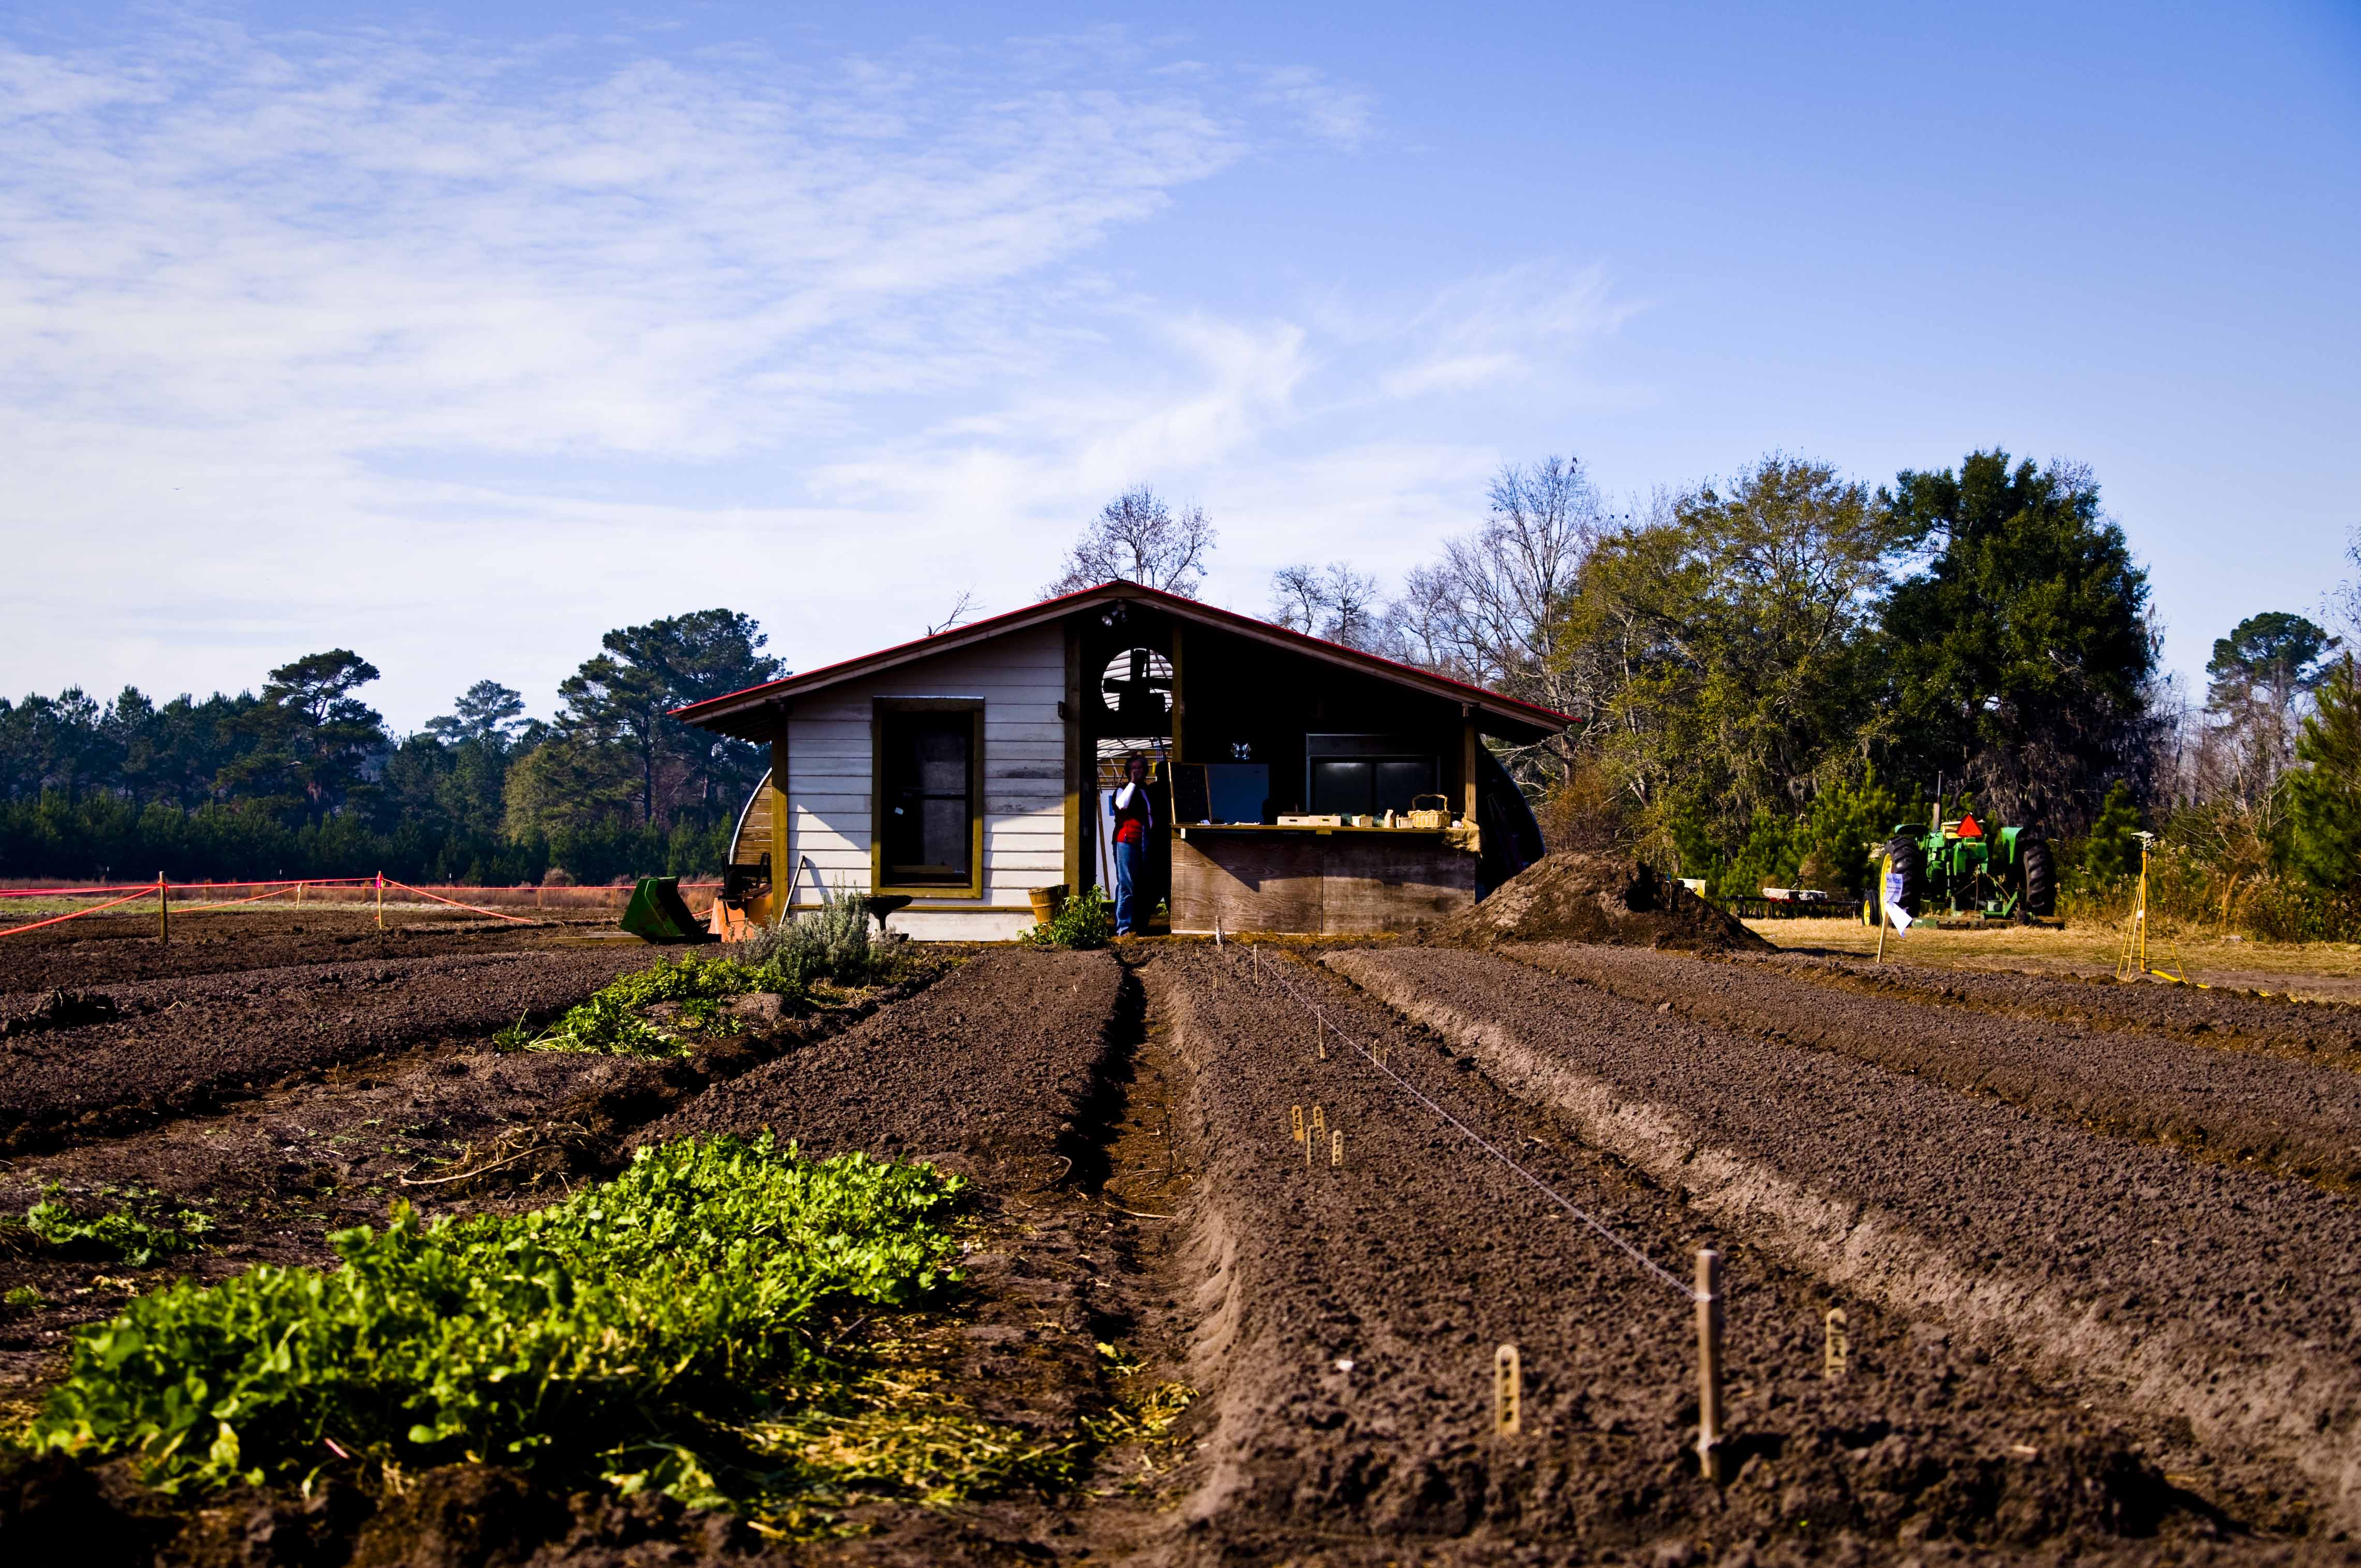 Condições mais favoráveis para a implementação de soluções de comércio justo e transparente de produtos agrícolas locais, saudáveis e sustentáveis em Belém do Pará